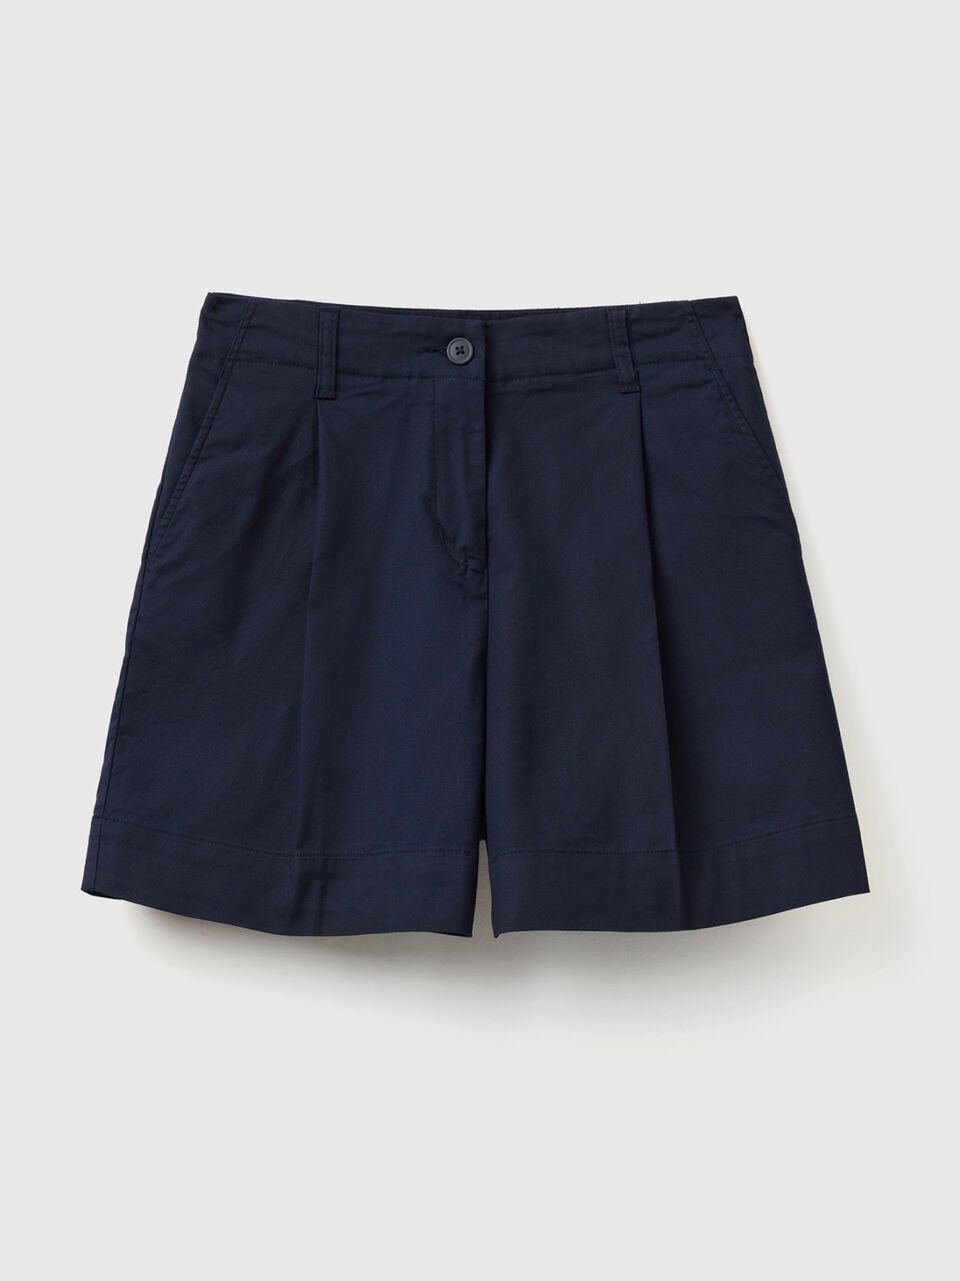 (image for) Shorts in cotone elasticizzato benetton shop